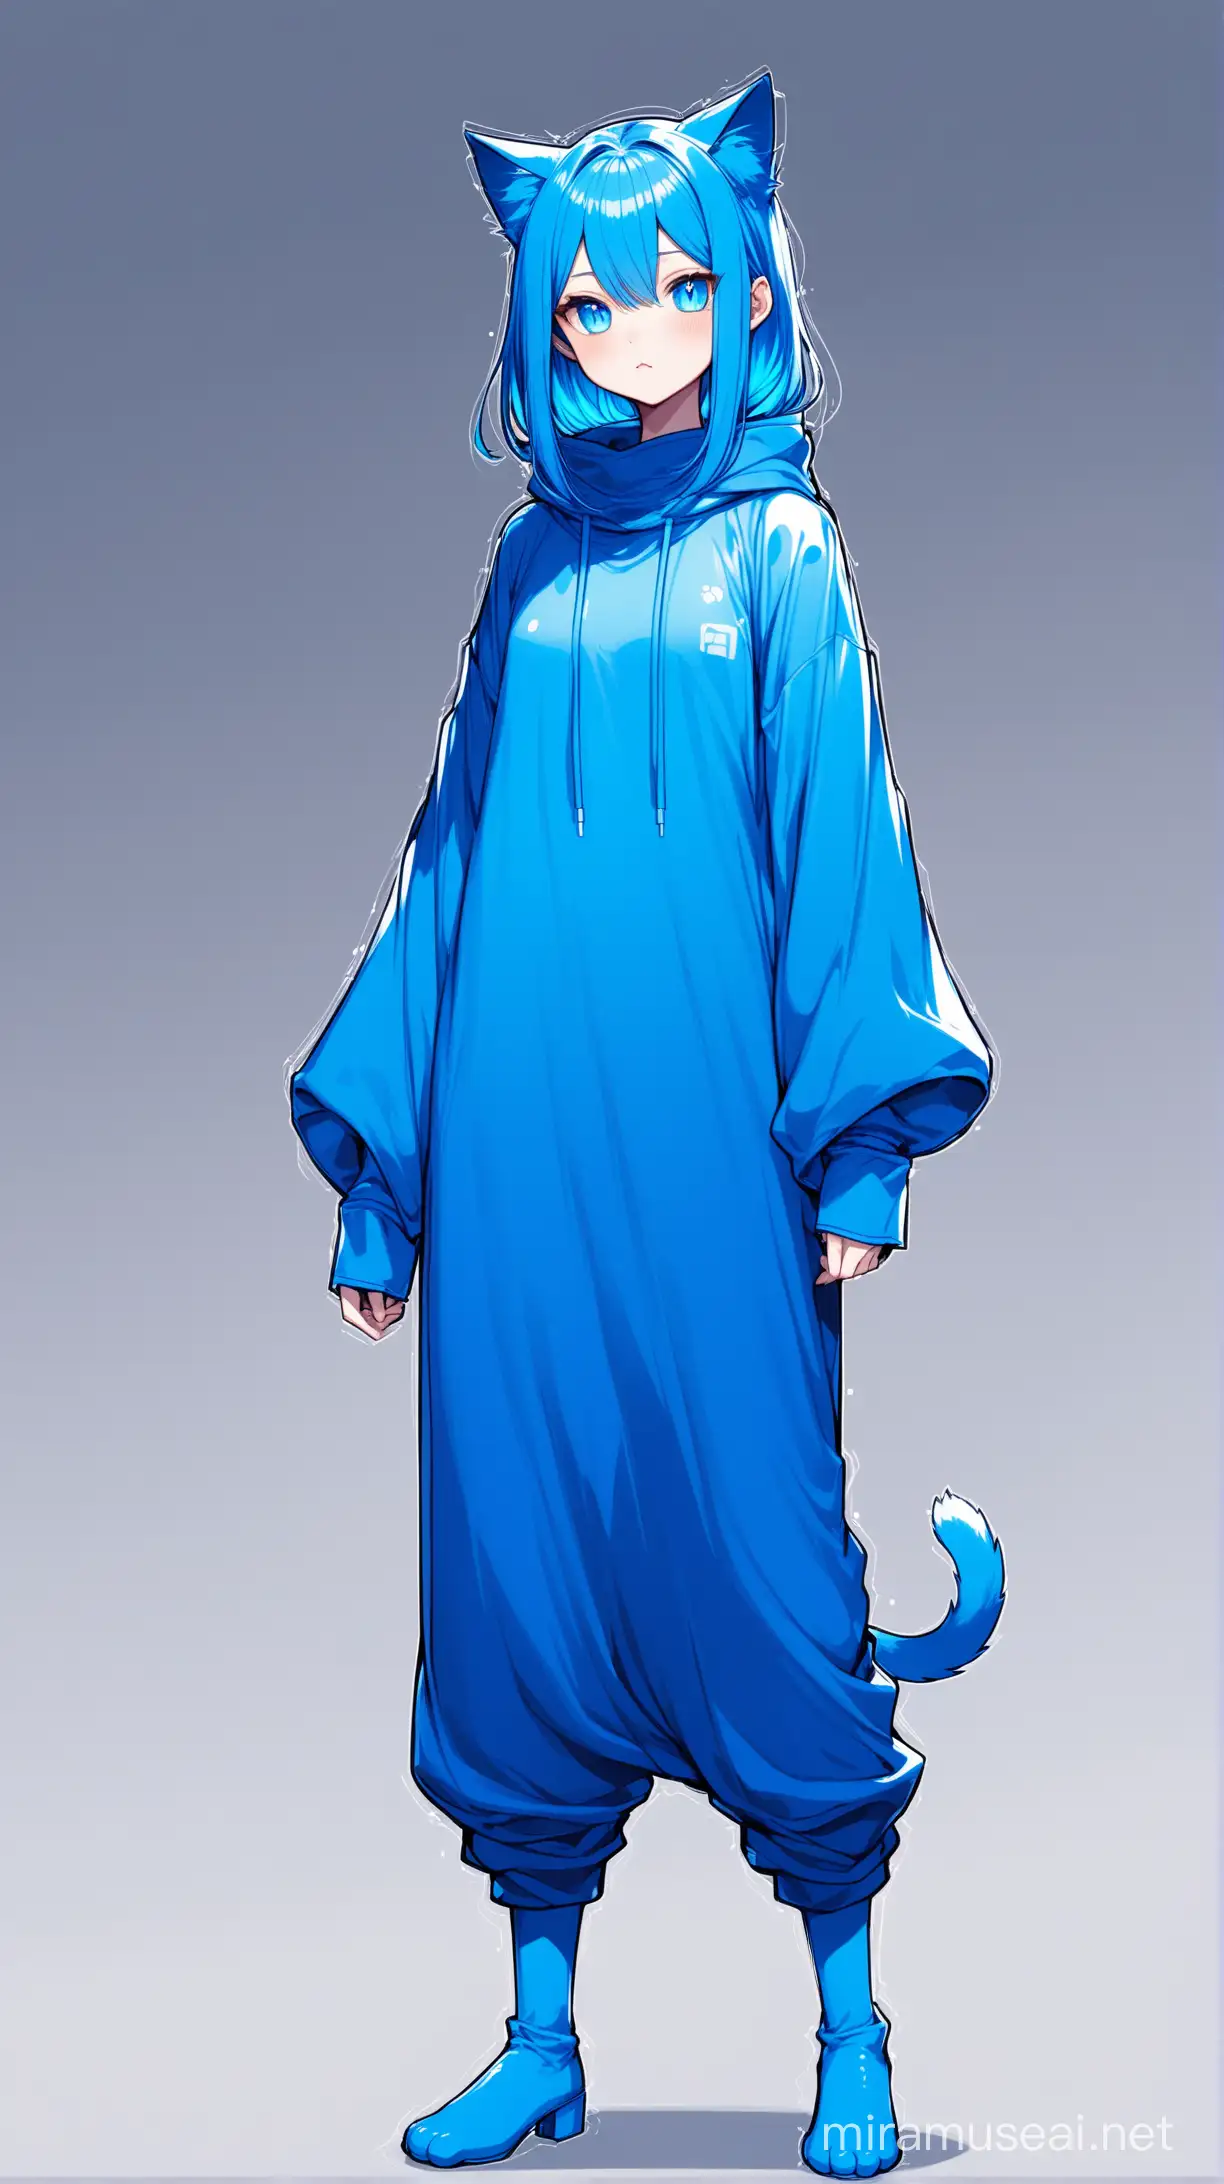 un chat comme humanoïde Bleu électrique au cheveux couleur Bleu électrique, porte de longs vêtements